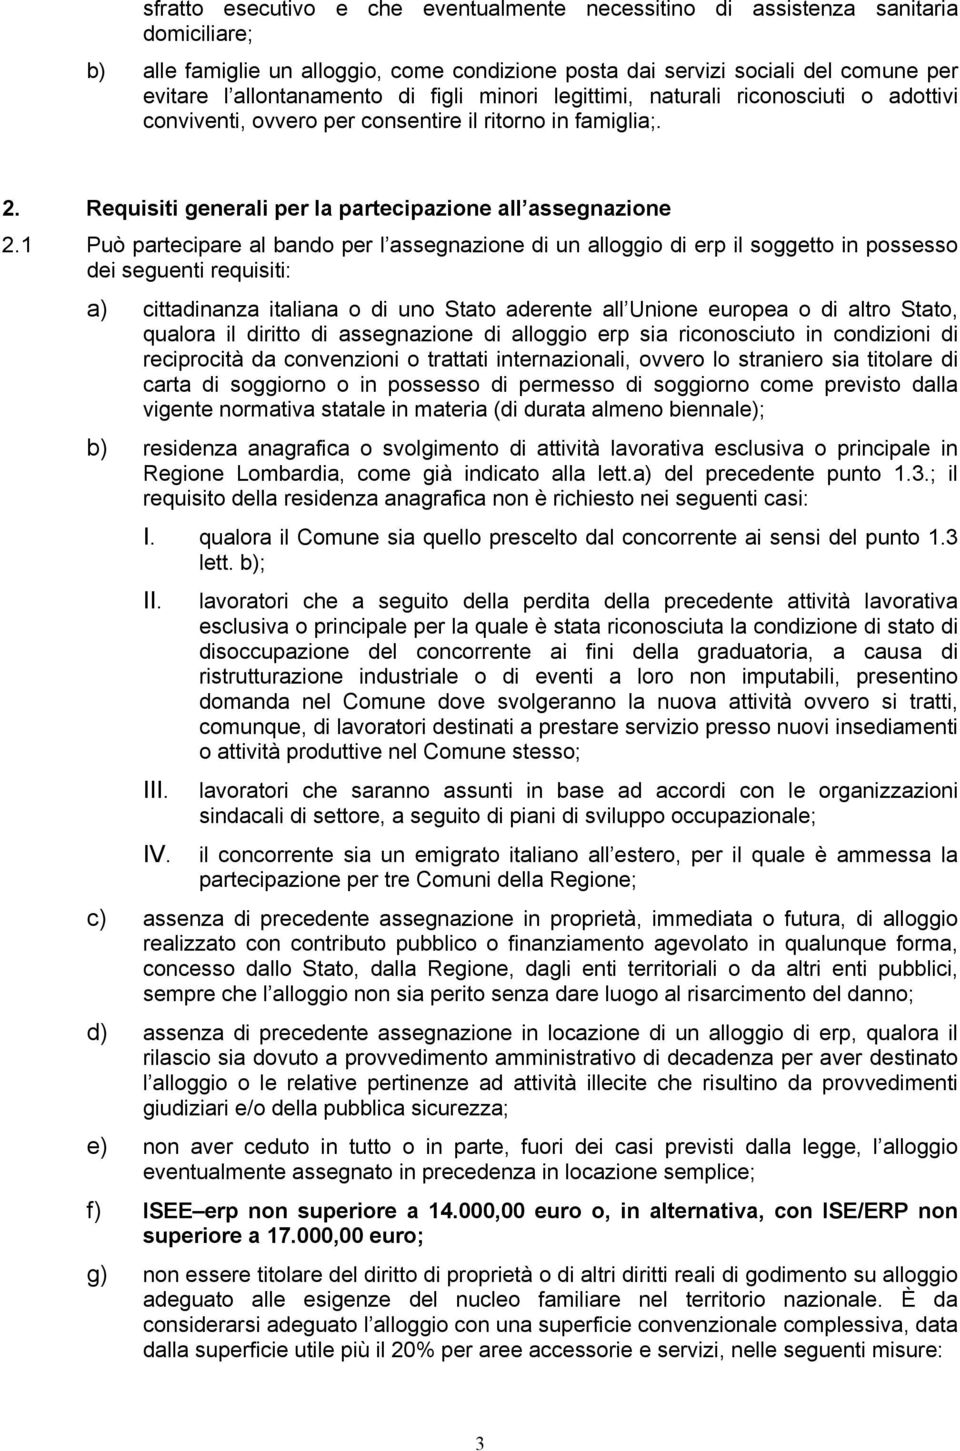 1 Può partecipare al bando per l assegnazione di un alloggio di erp il soggetto in possesso dei seguenti requisiti: a) cittadinanza italiana o di uno Stato aderente all Unione europea o di altro